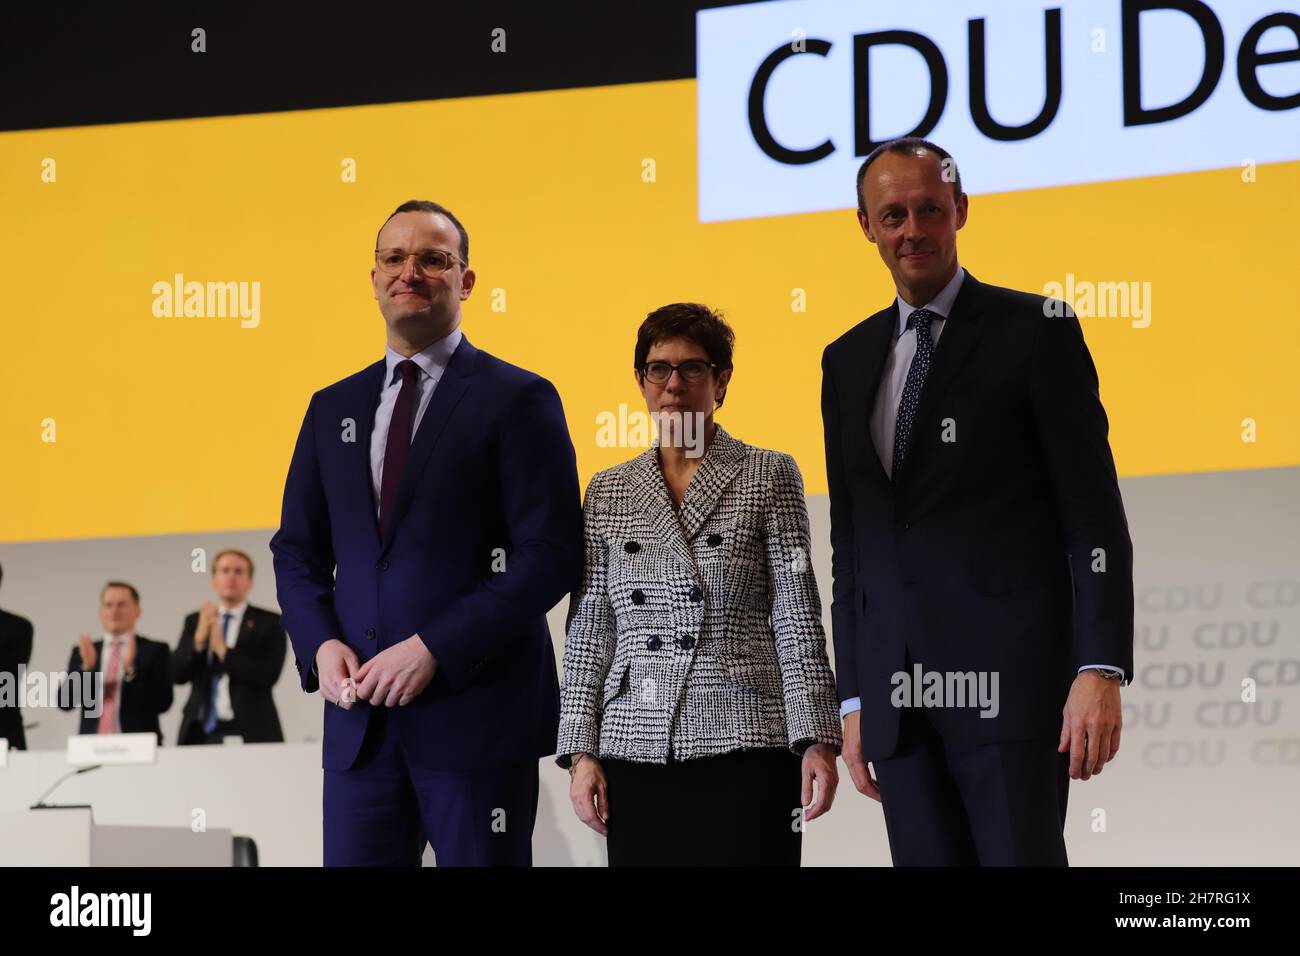 Friedrich Merz Kandidat für den CDU-Parteivorsitz auf dem Bundesparteitag der CDU 2018 in Hamburg Zusammen mit der später gewählten Annegret Kramp-Karrenbauer und dem unterlegenen Jens Spahn Stock Photo